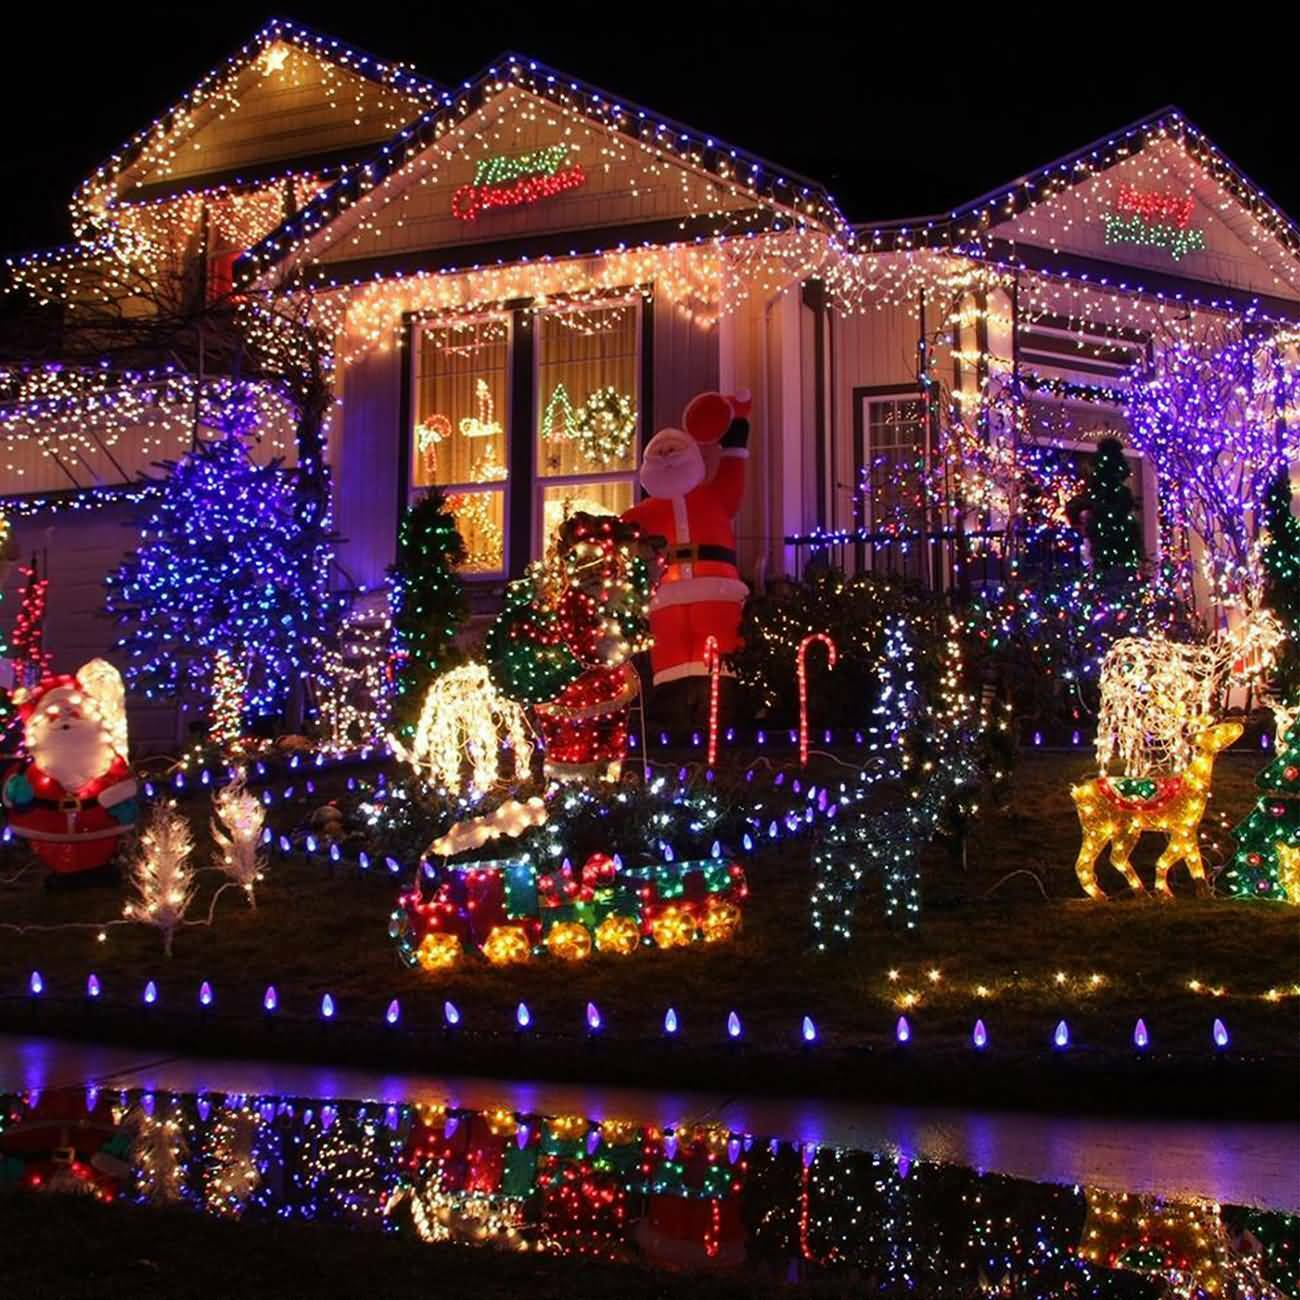 Maity LED Lichterkette Lichtervorhang Wasserdicht Lichterketten für Innen und Außen mit 8 Modi Dimmbar, Dekobeleuchtung für Weihnachten, Party, Hochzeit, Garten, Haus usw. (Multi-farbe,10m-100LED)